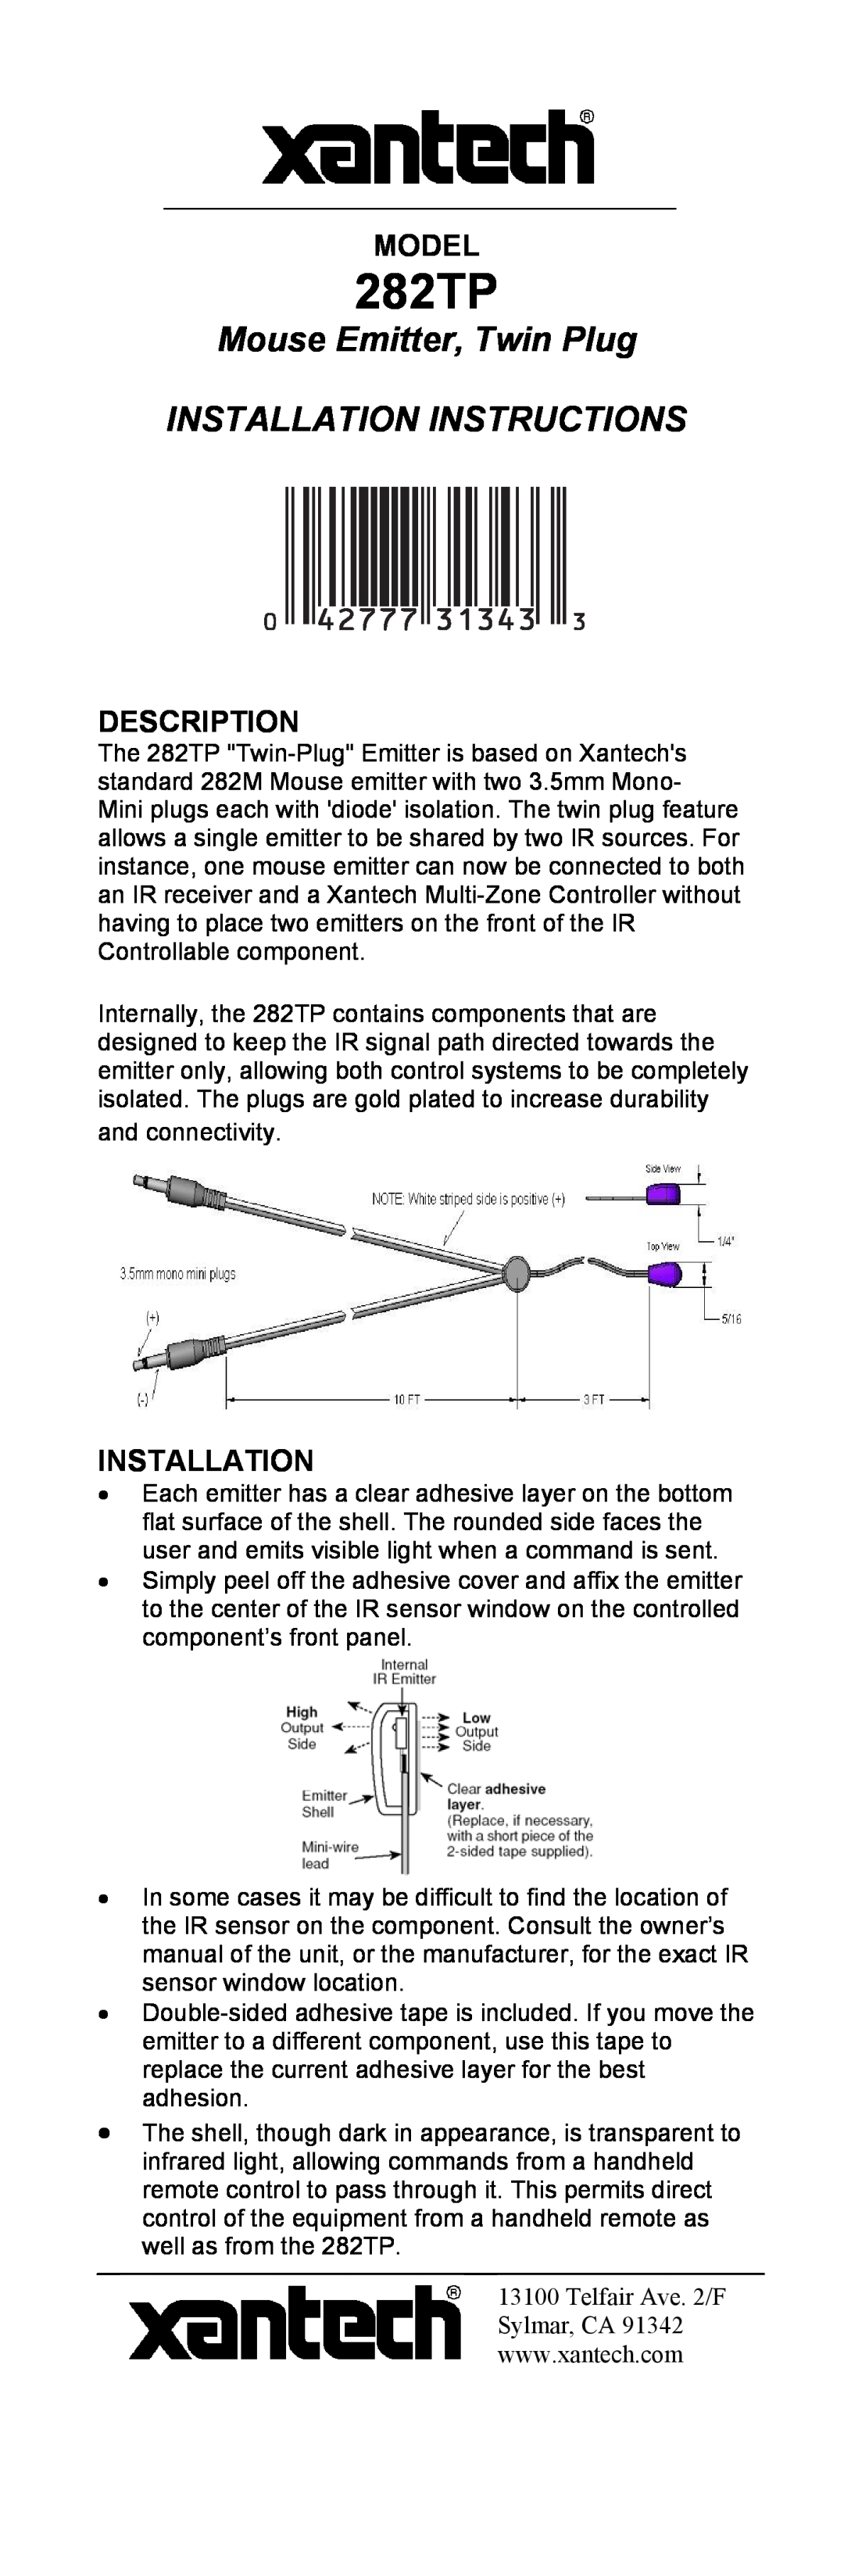 Xantech 282TP installation instructions Model, Description, Installation 